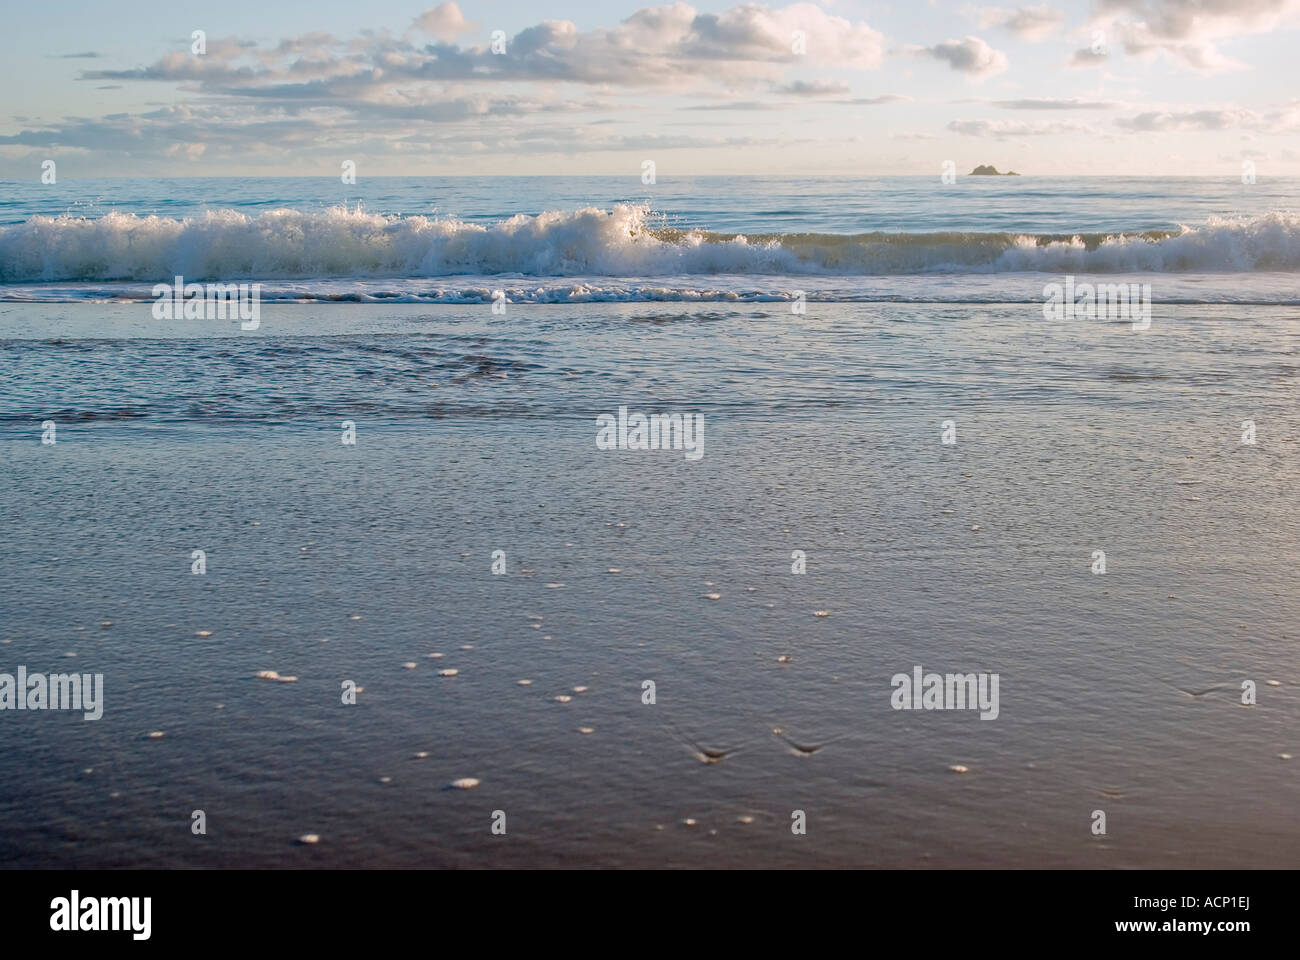 Una spiaggia molto bella scena con le onde in arrivo a raggiungere la sabbia Foto Stock